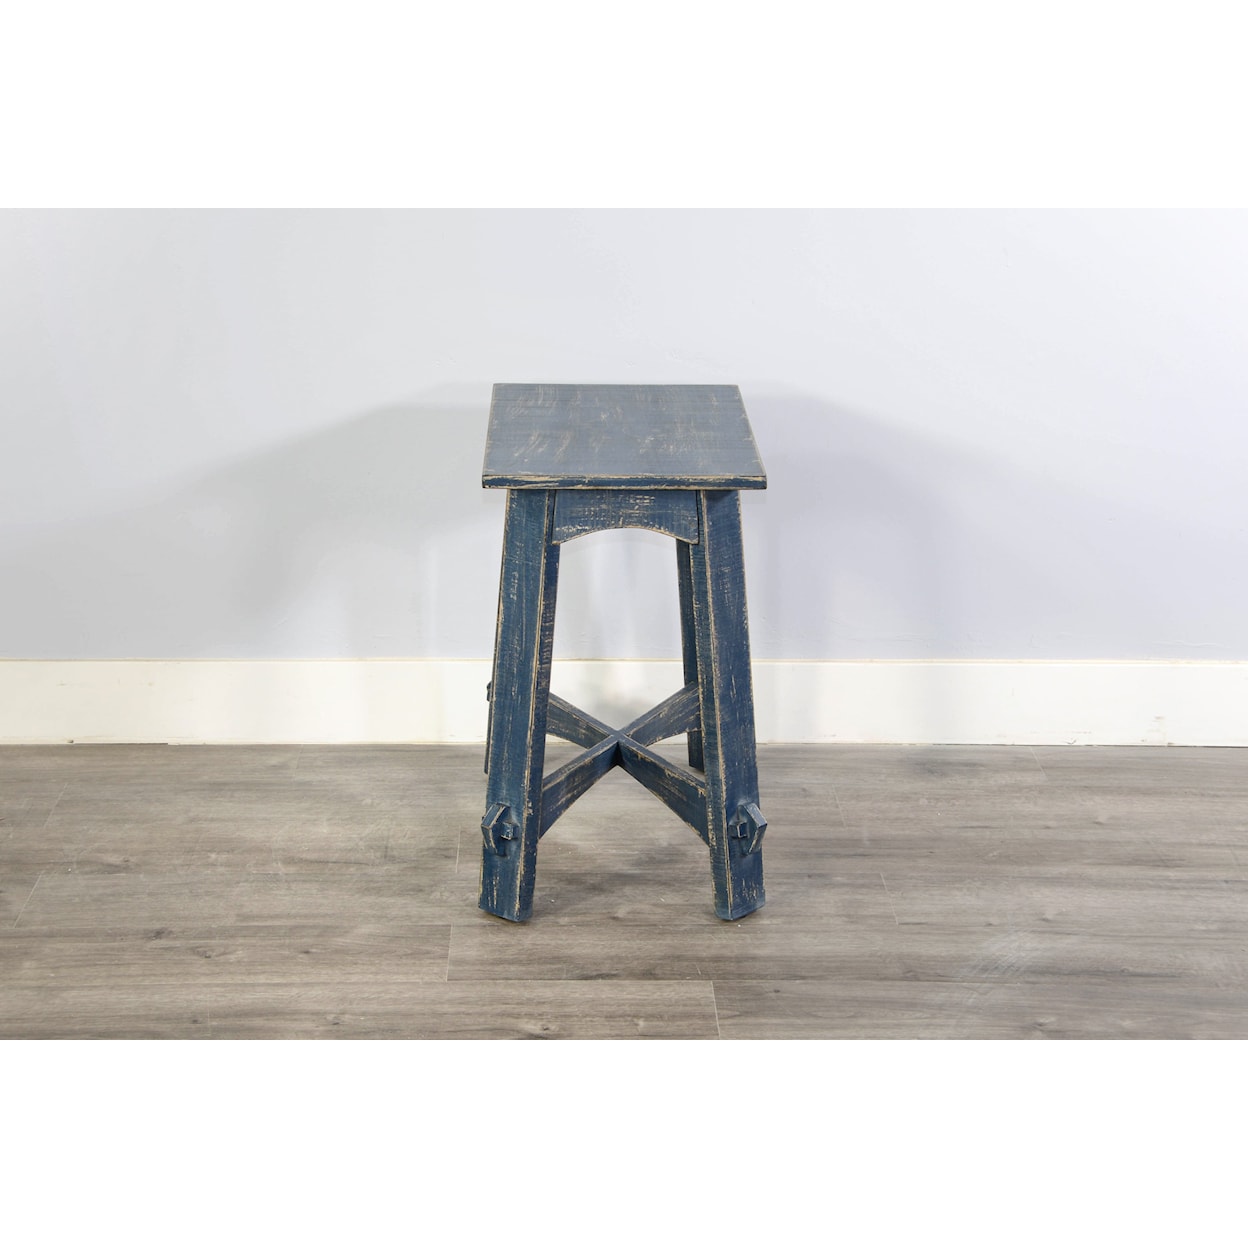 Sunny Designs Marina Ocean Blue Chair Side Table